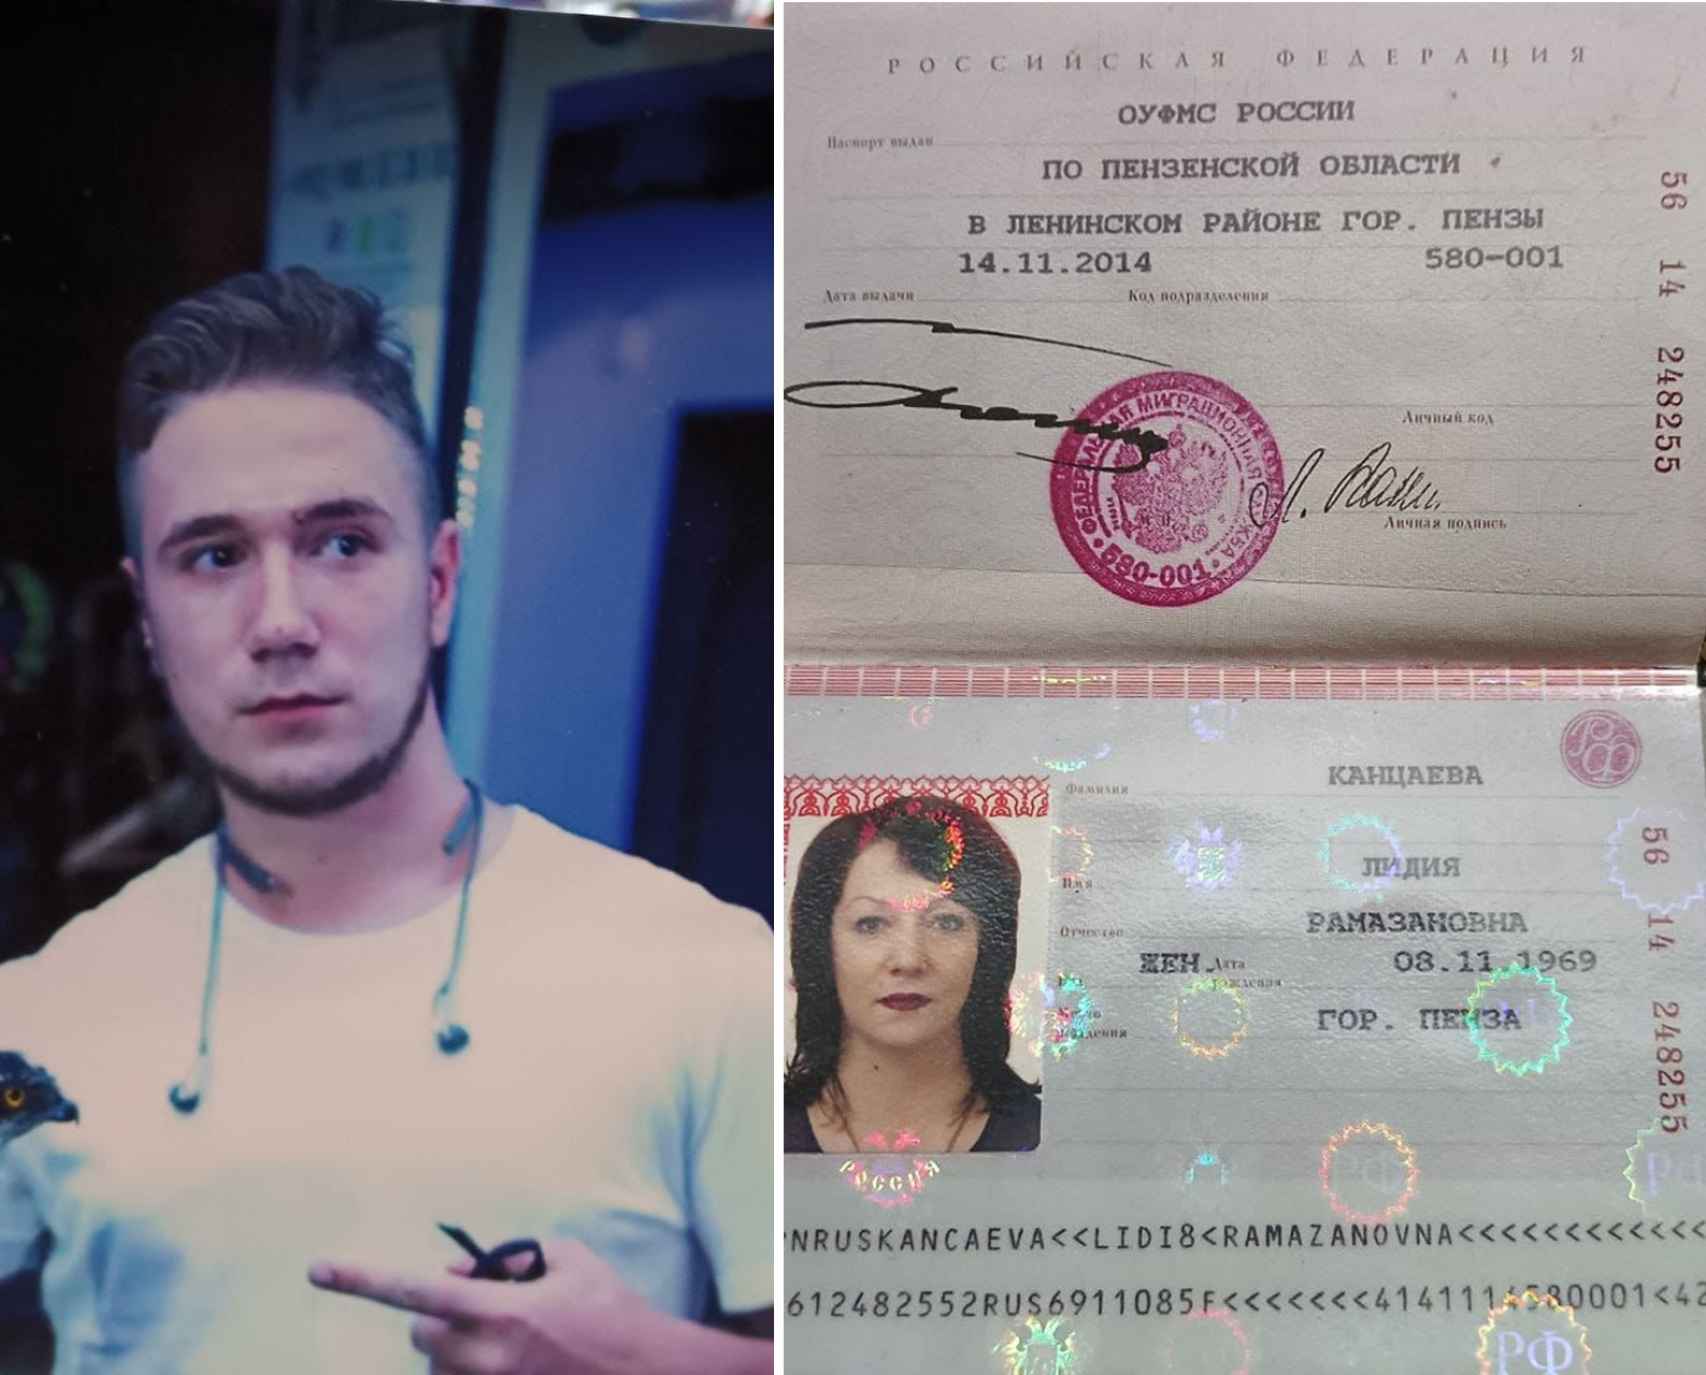 Roman Igorevich Emelyanov, el soldado de 32 años violado y desaparecido y el pasaporte de su madre, Lidia Ramazanovna Kantsaeva.